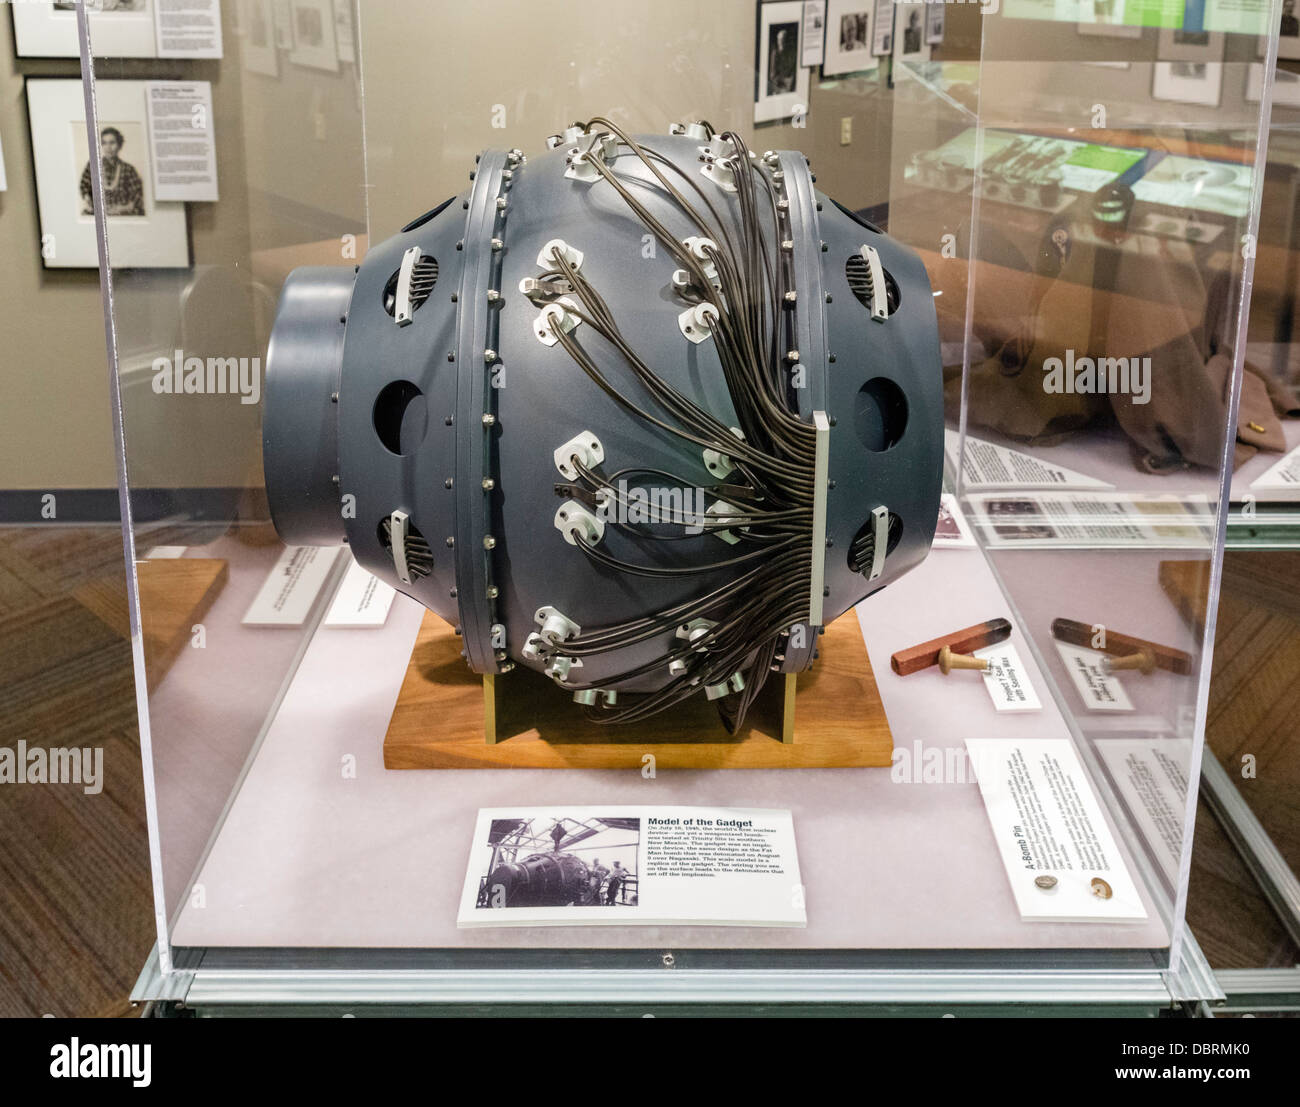 Modello in scala del 'gadget', primo dispositivo nucleare testato presso il Trinity Site nel 1945, Bradbury Science Museum di Los Alamos, NM, Stati Uniti d'America Foto Stock